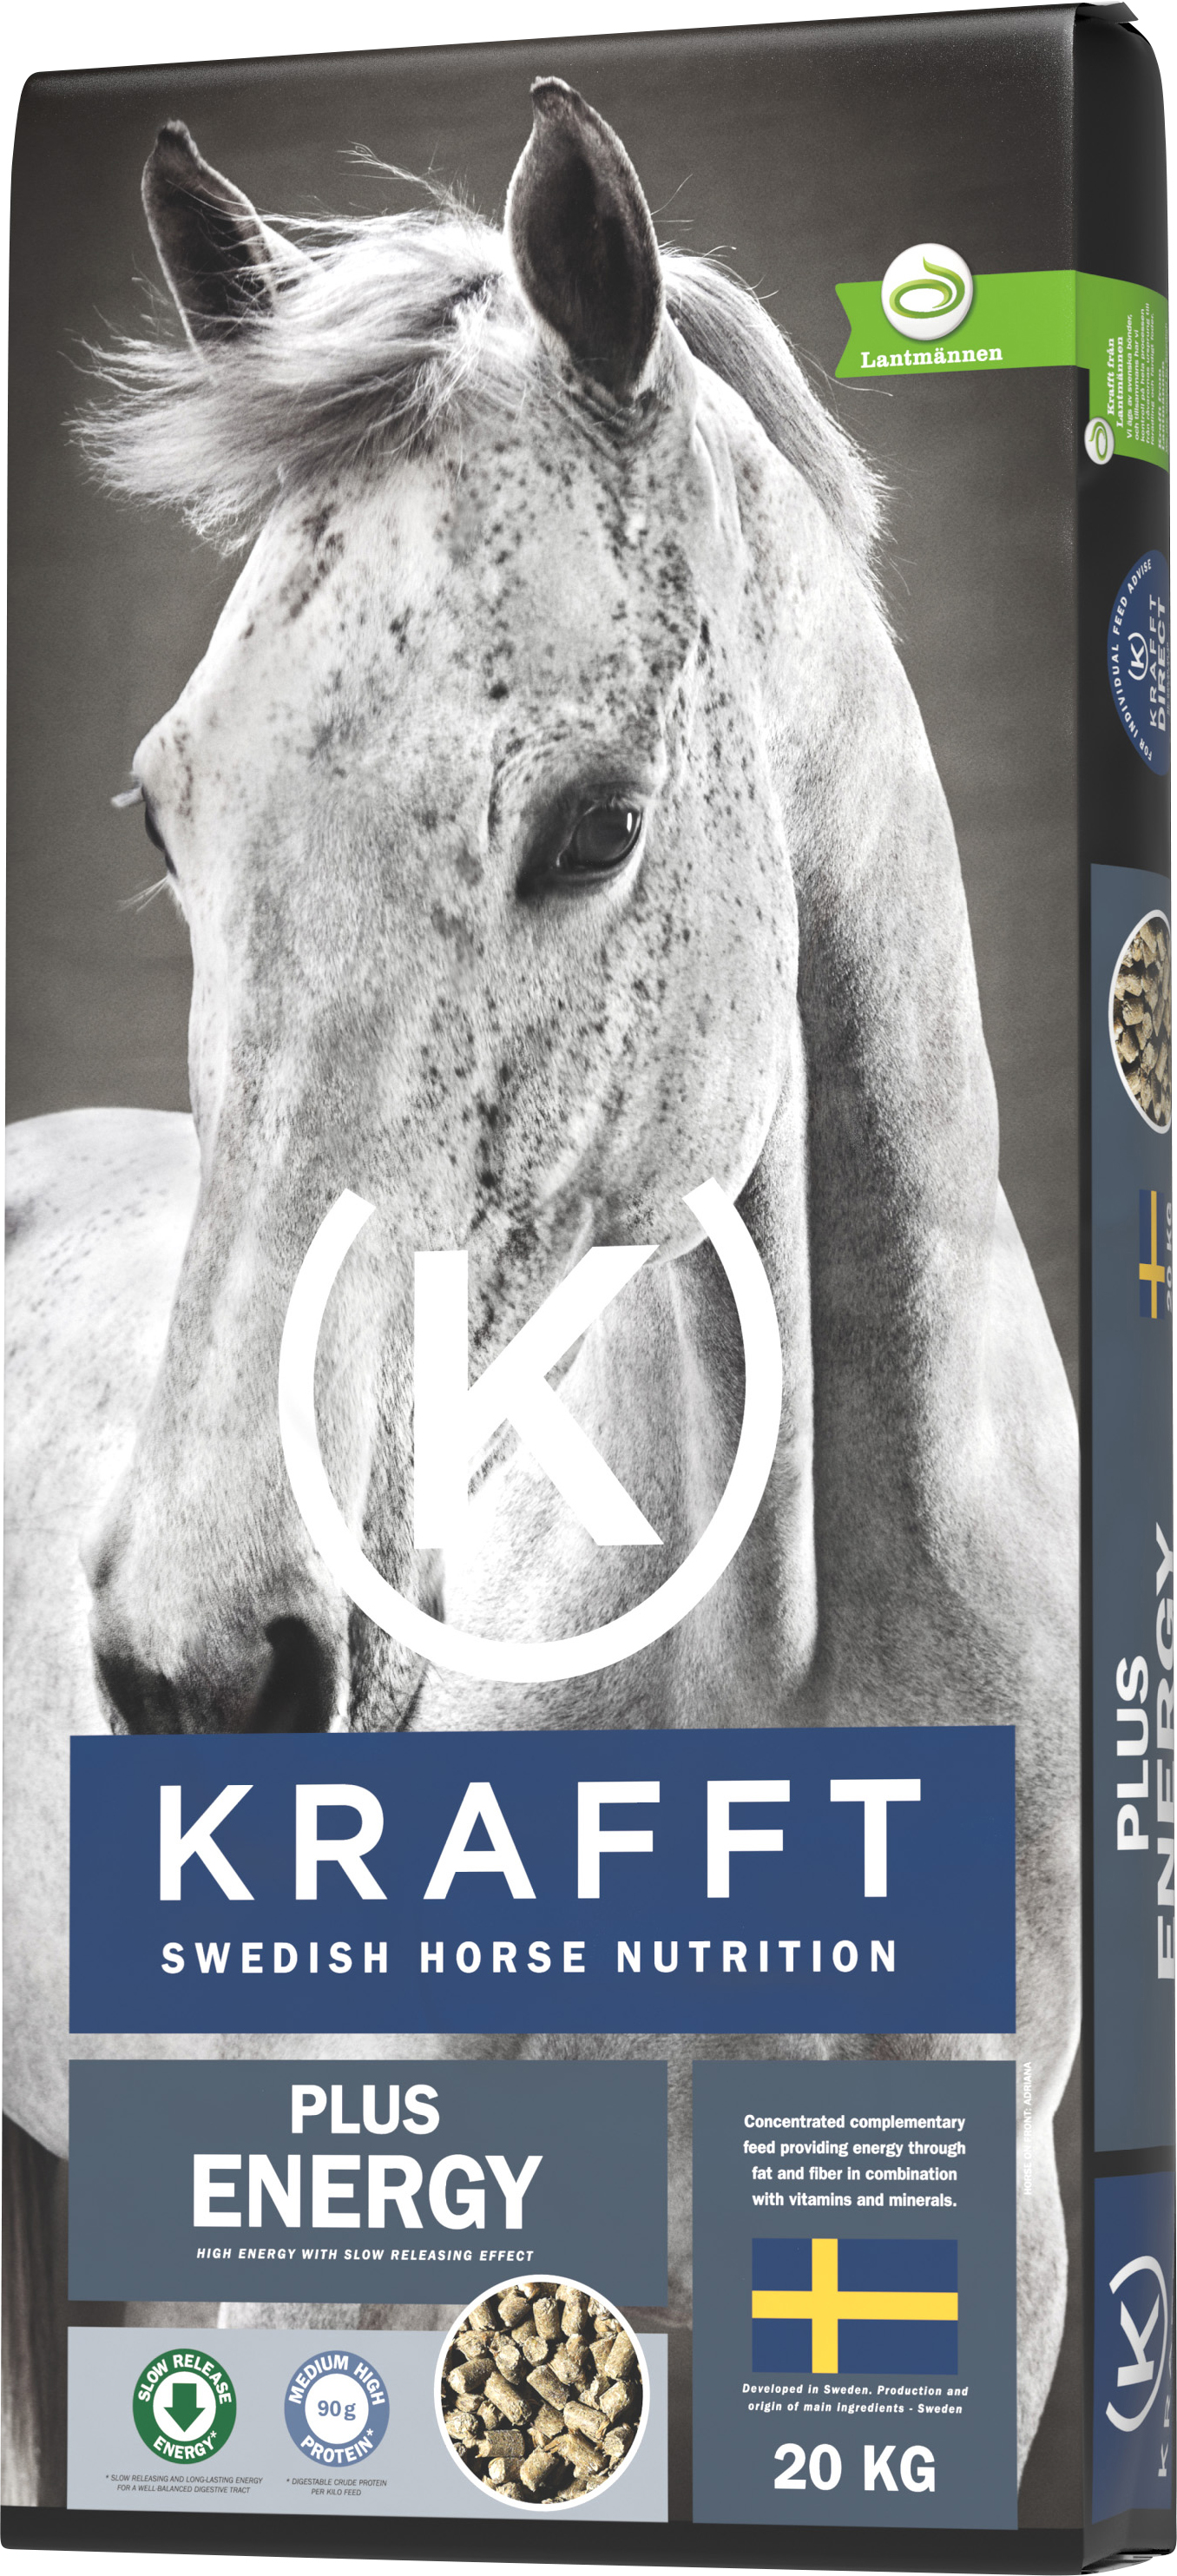 Hästfoder Krafft Plus Energy 20kg